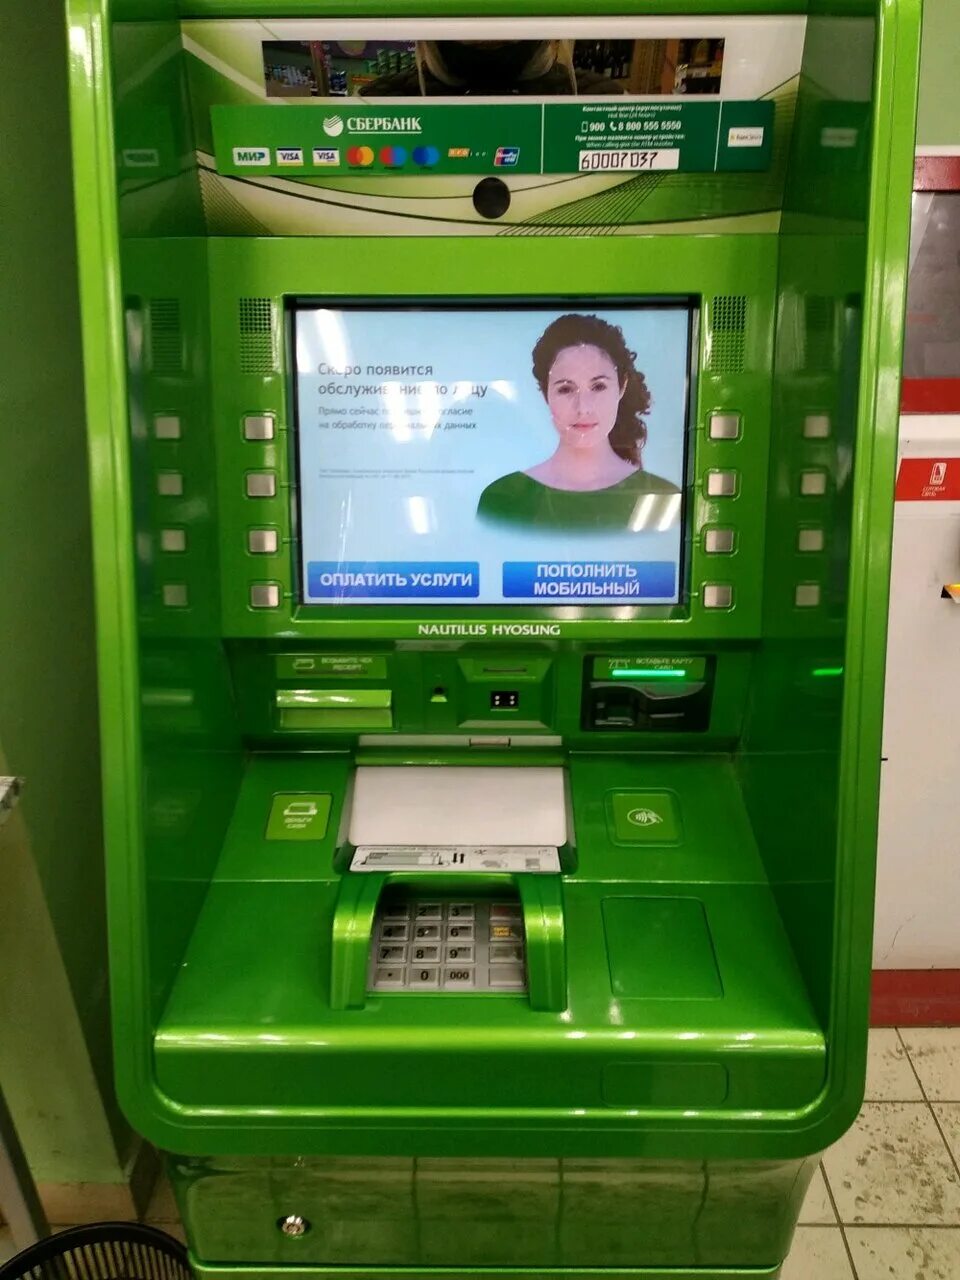 Дисплей банкомата. Банкомат Сбербанка. Дисплей банкомата Сбербанка. Экран терминала Сбербанка.